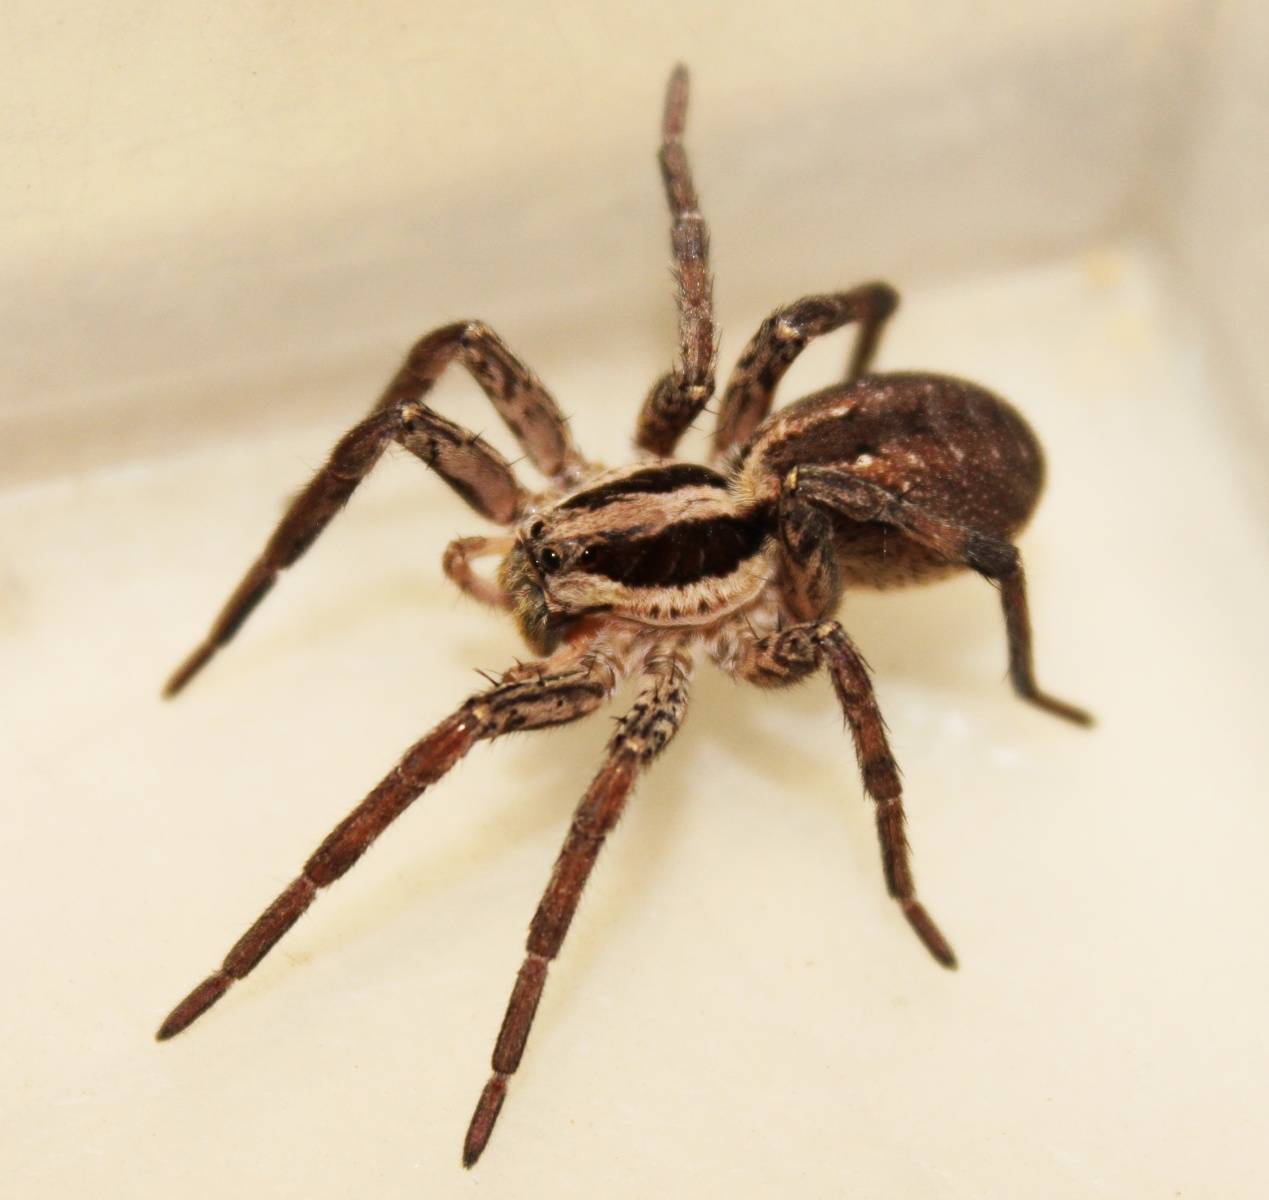 Саратовцы стали чаще находить огромных тарантулов на улицах: ученый пояснил, с чем это связано, стоит ли их бояться и предупредил о возможных визитах пауков в дома — иа «версия-саратов»